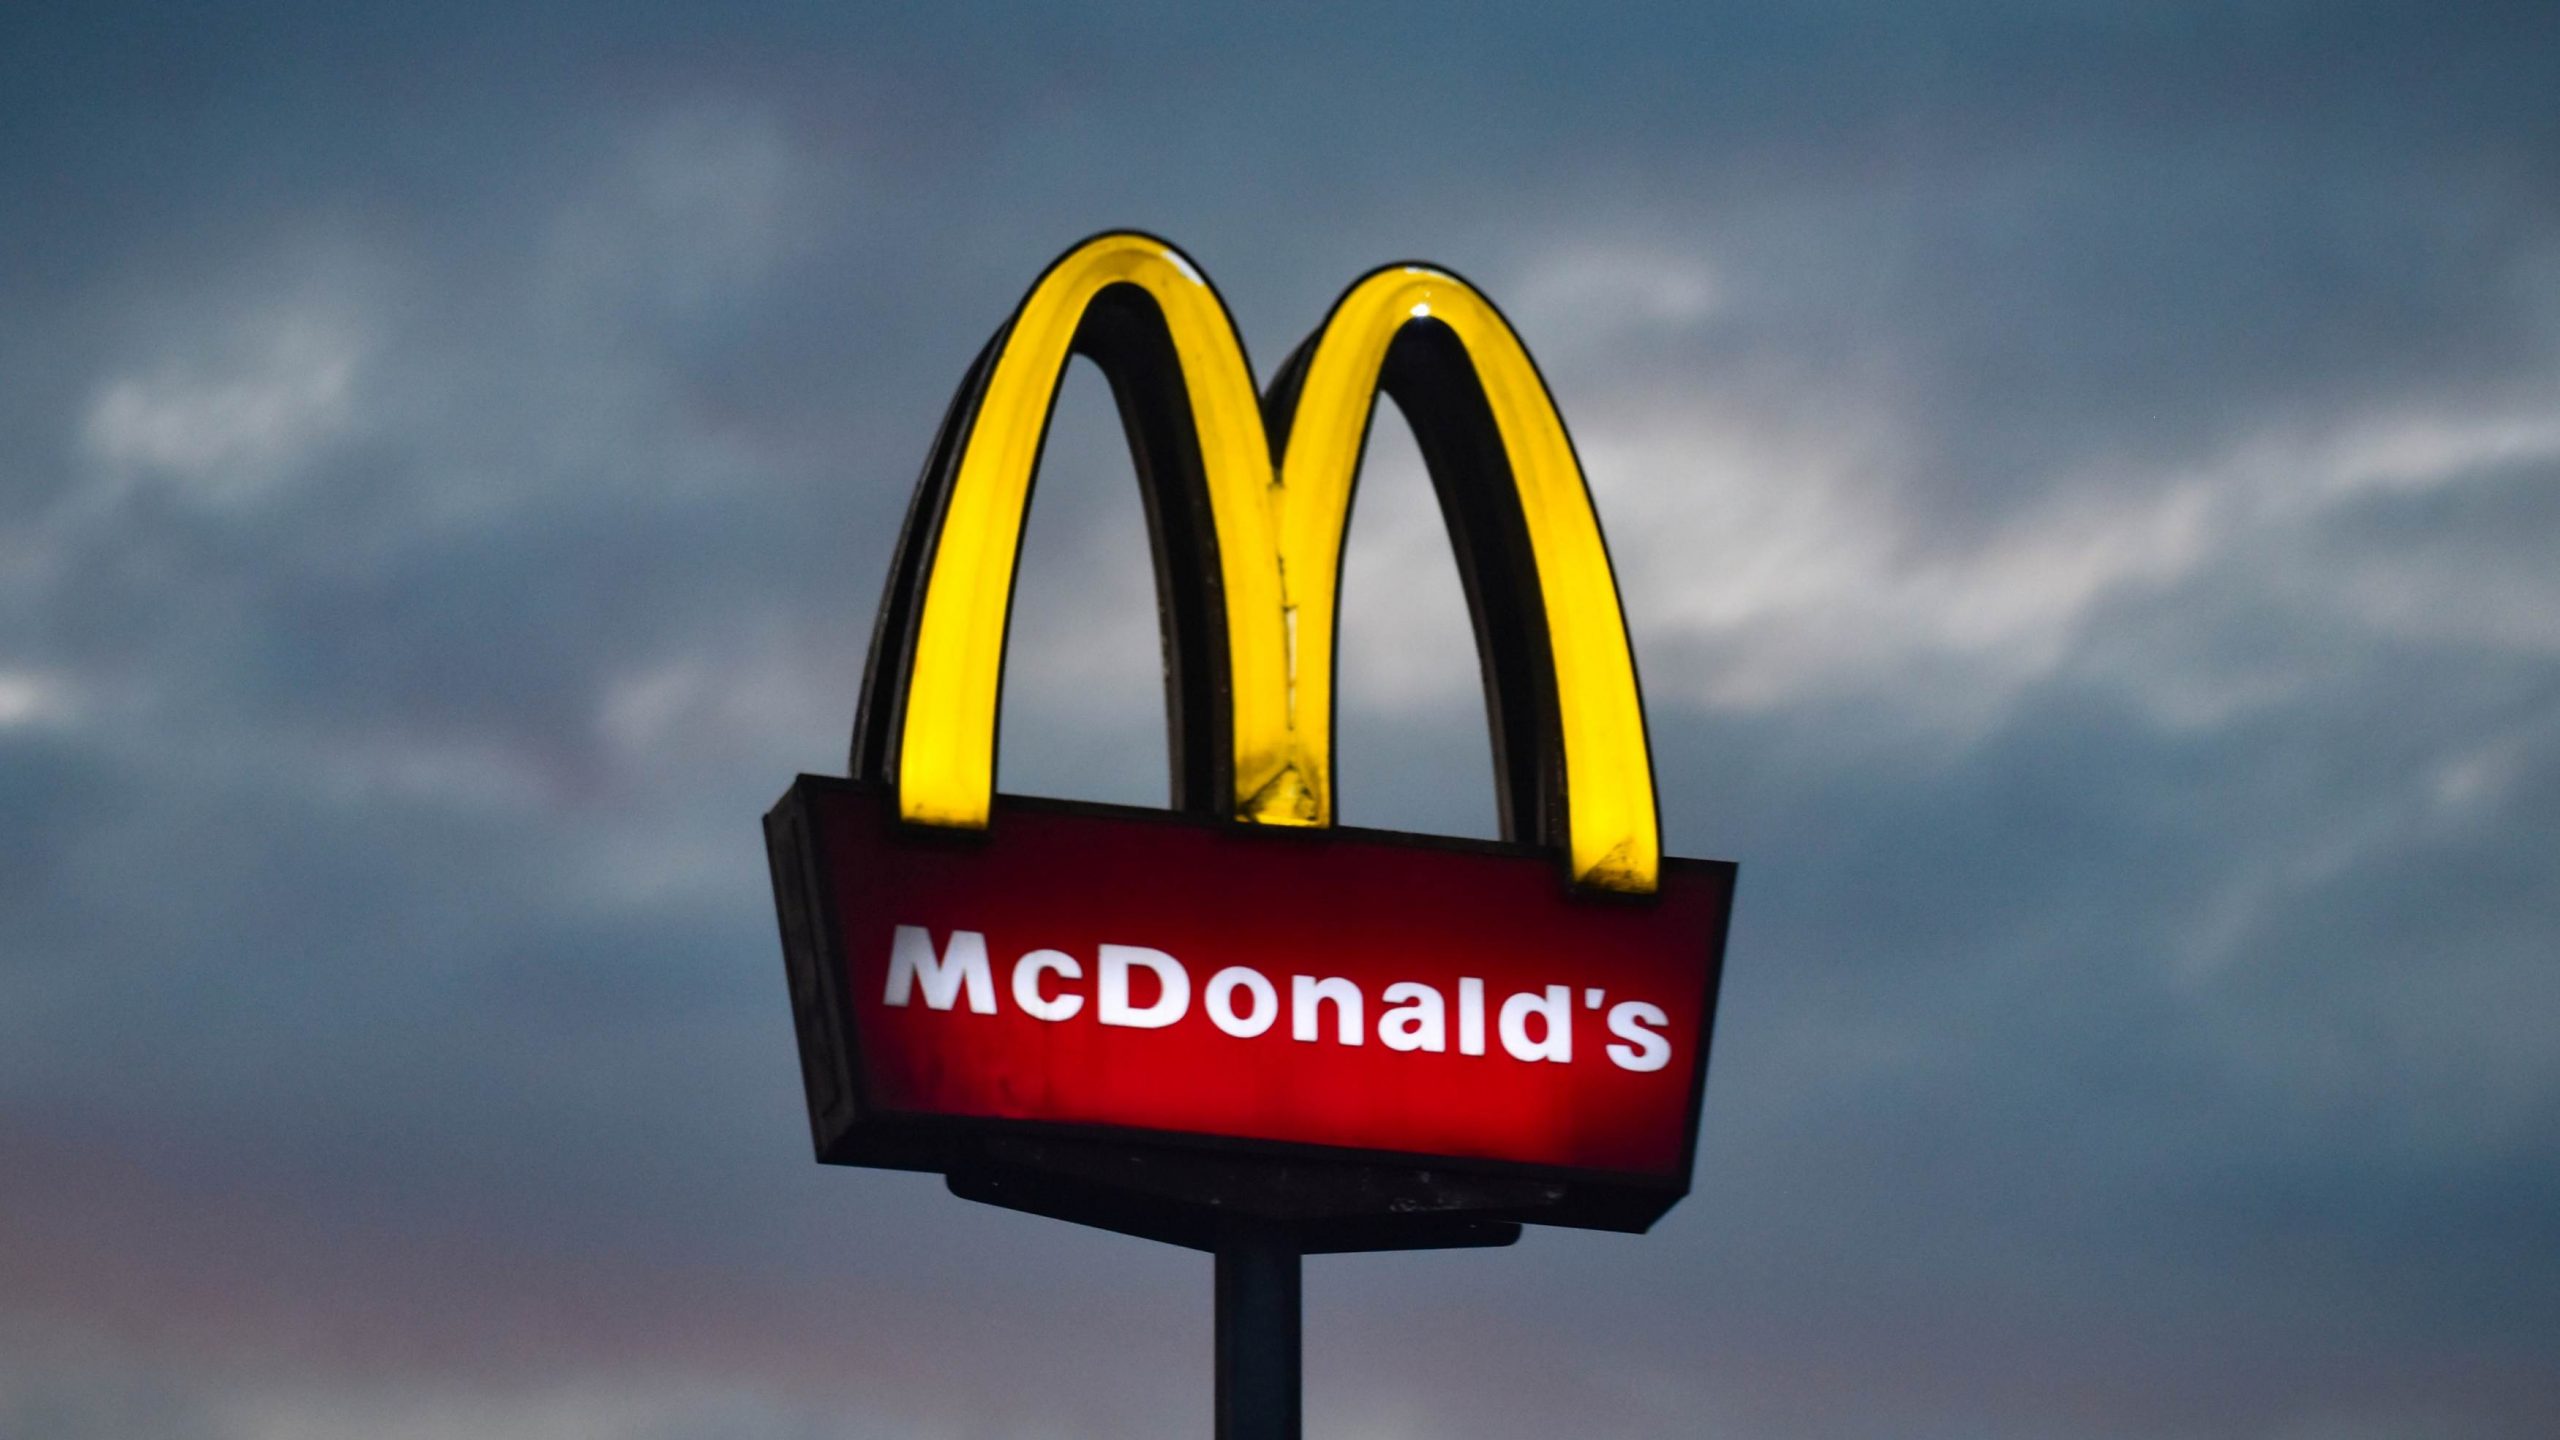 McDonald’s Tawar Pulangan Tunai RM5 Untuk Pembayaran Melalui Boost